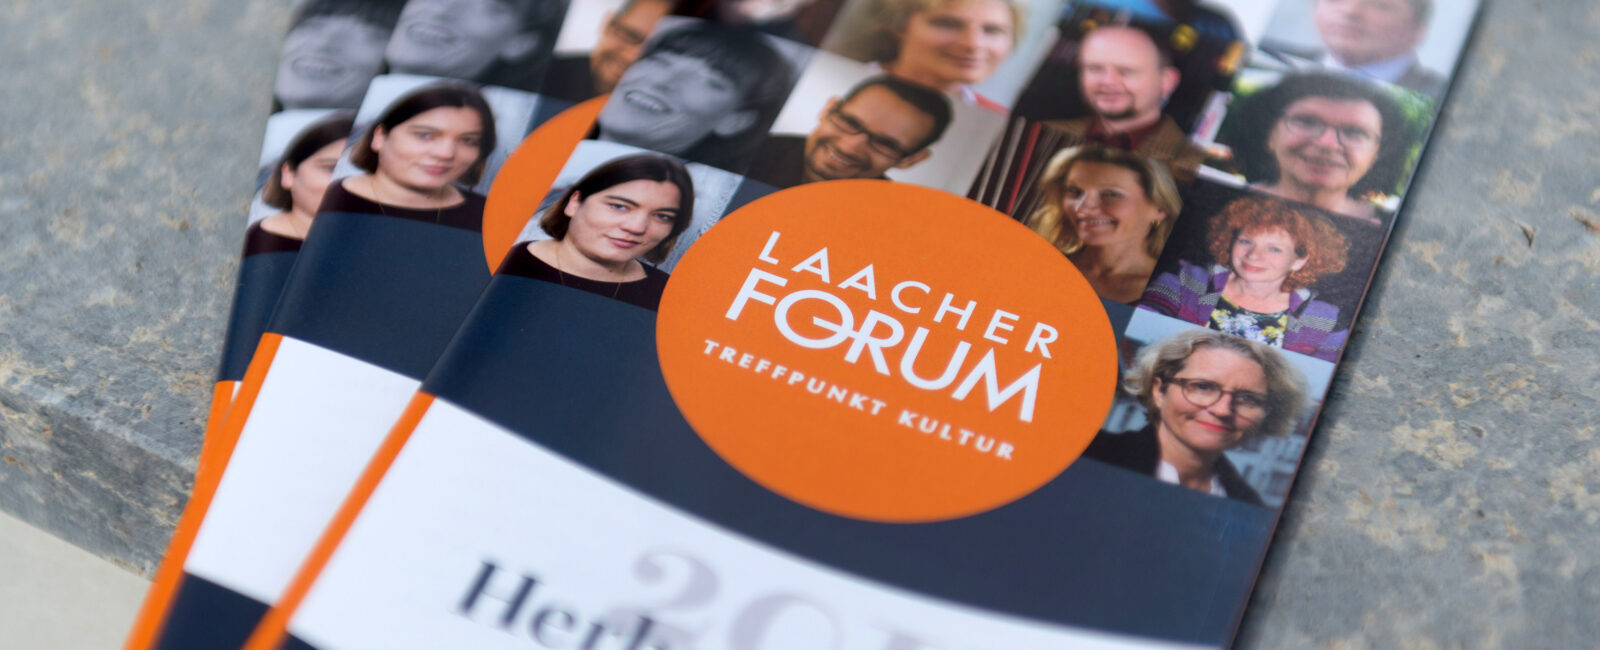 Laacher Forum Programmheft